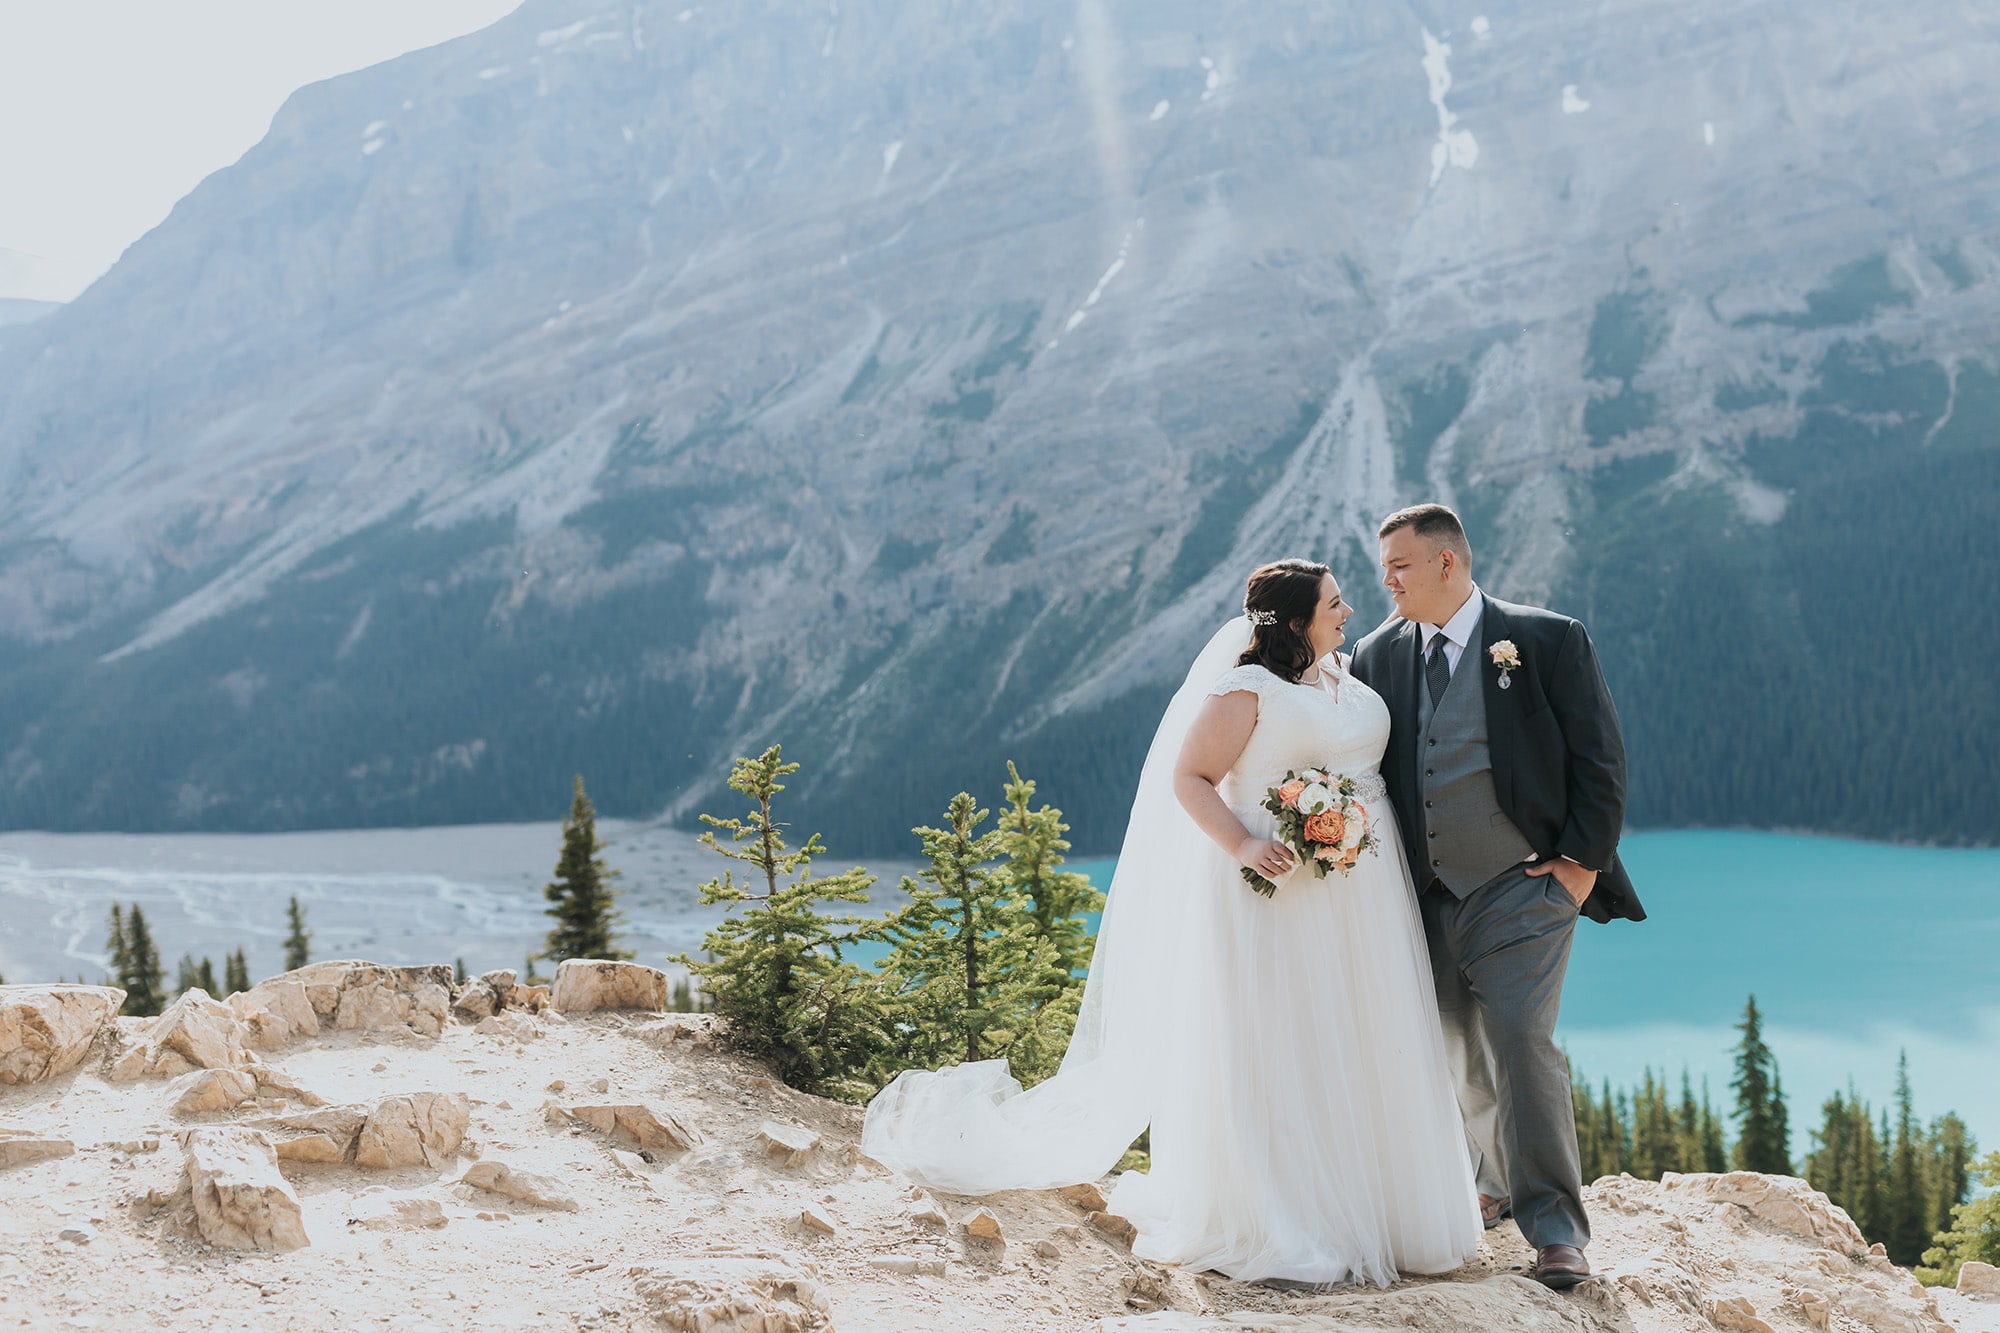 peyto lake wedding adventure elopement